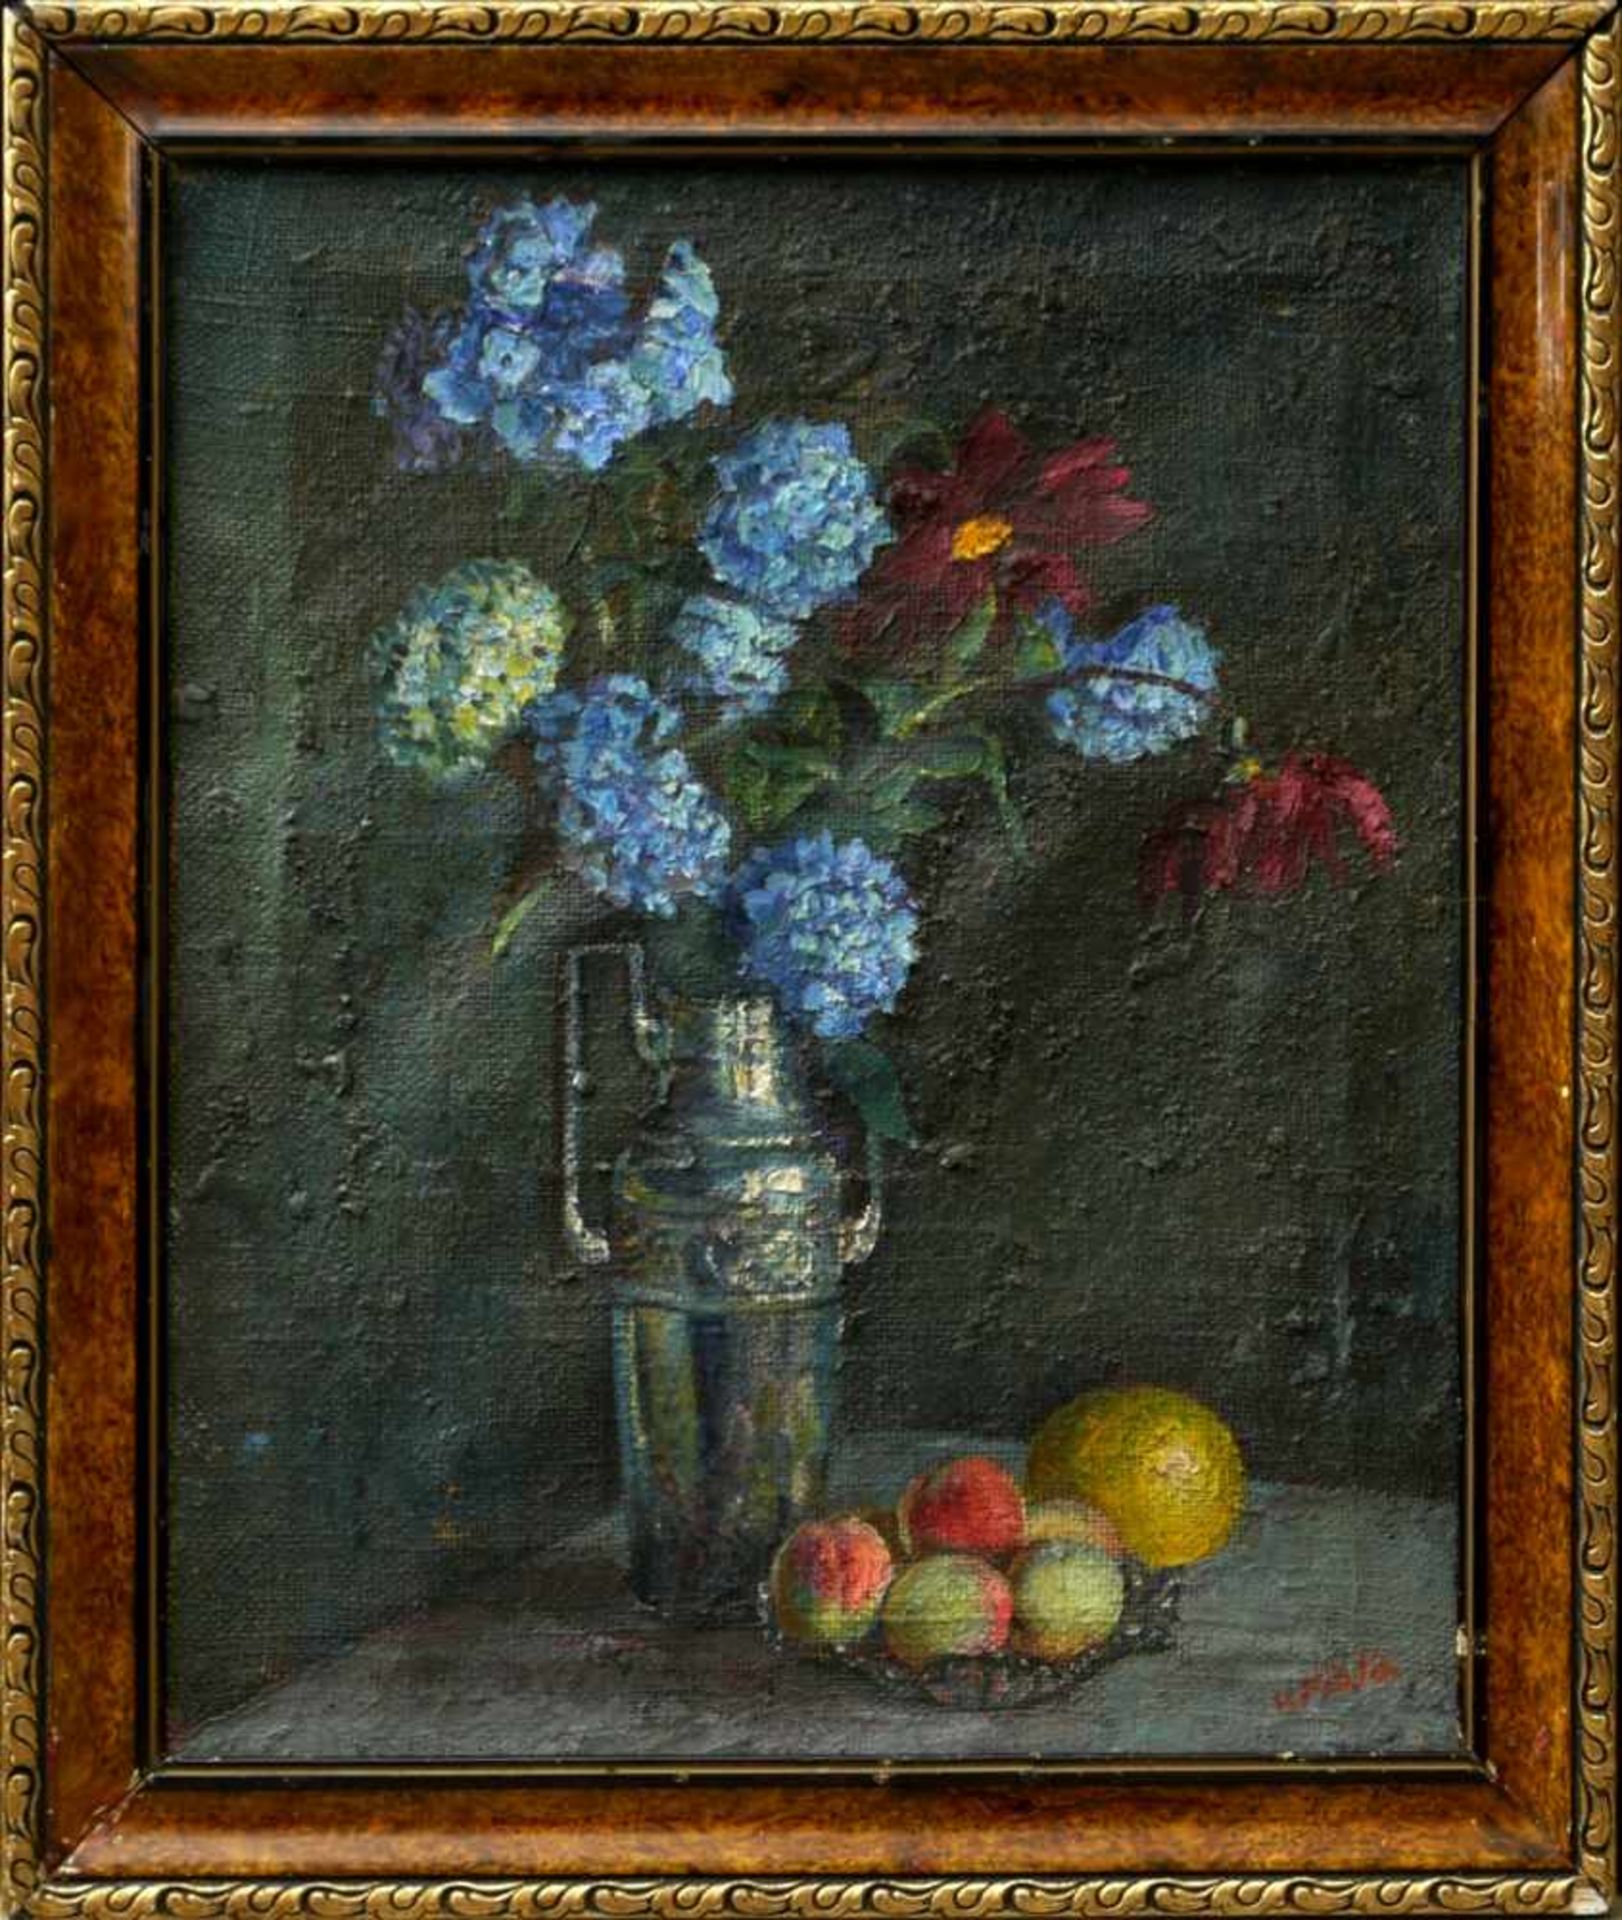 Fiala, Vaclav (1896-1980) - Stillleben mit Vase und FrüchtenAnsicht einer hohen, silbernen